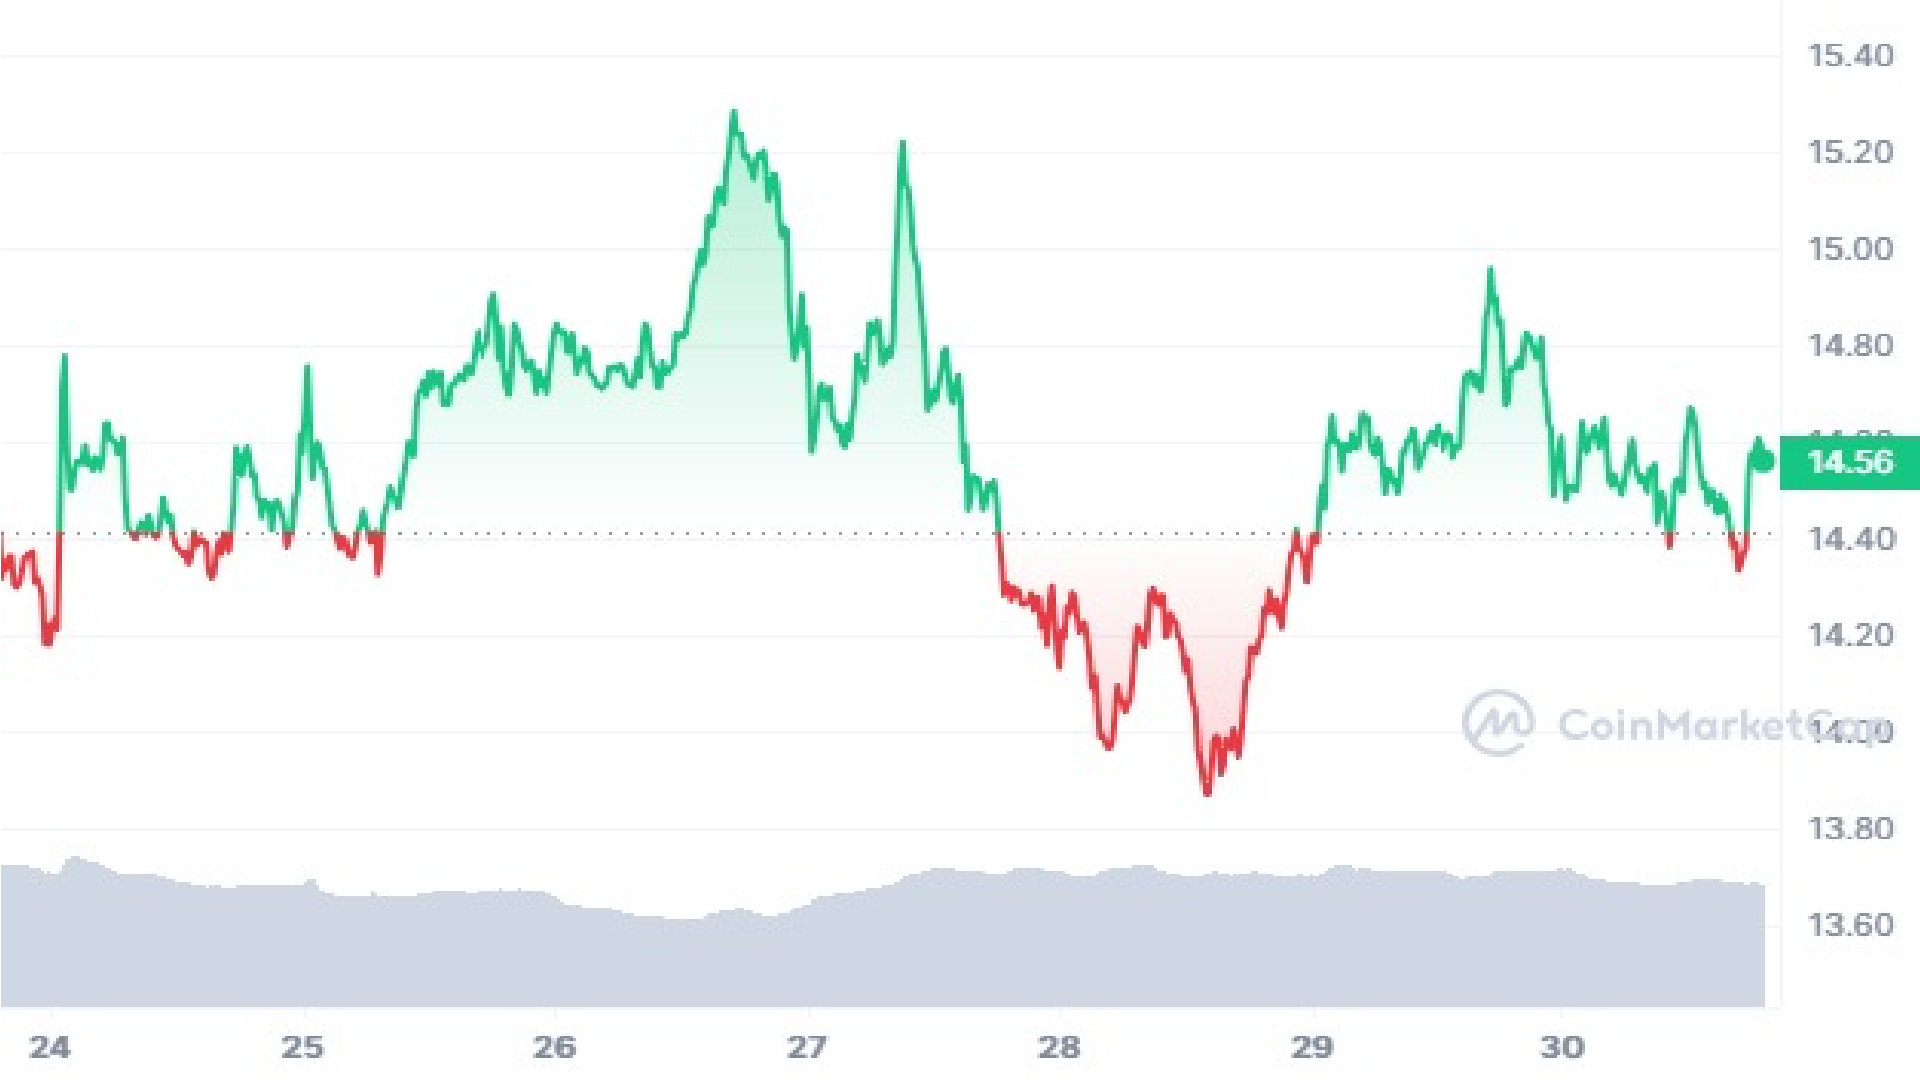 LINK Crypto 7 Days Price Graph